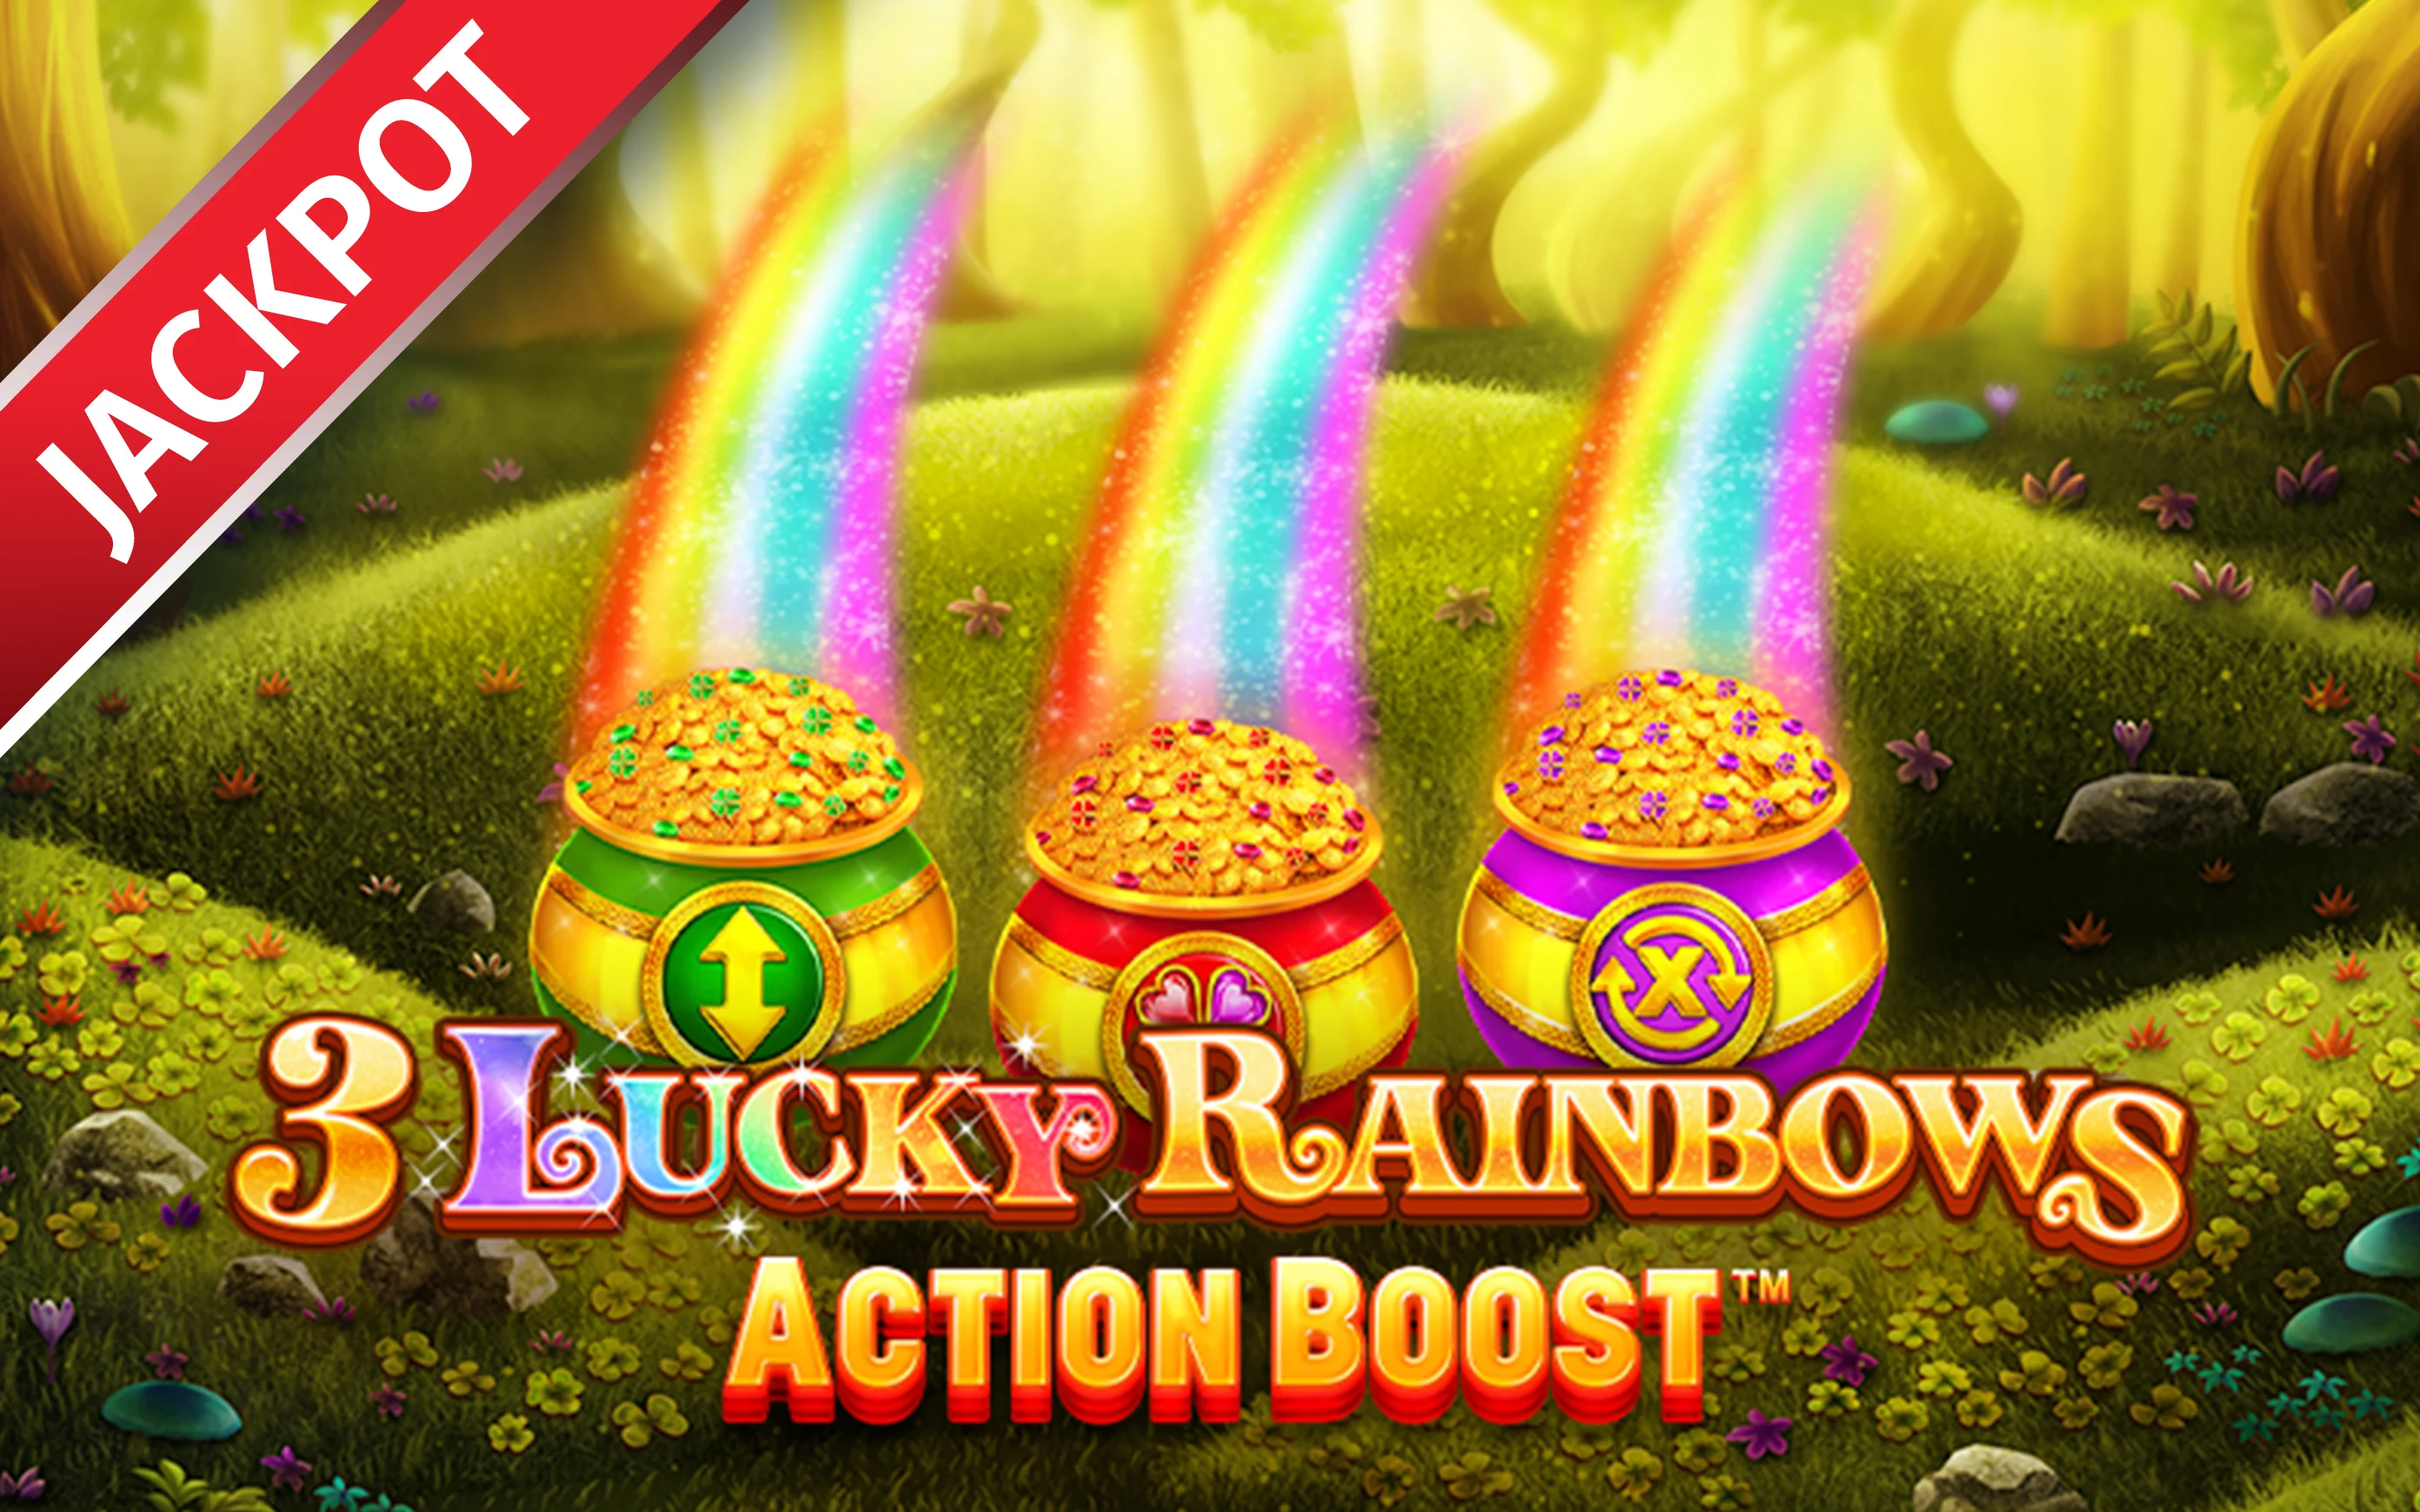 Spielen Sie Action Boost ™ 3 Lucky Rainbows auf Starcasino.be-Online-Casino